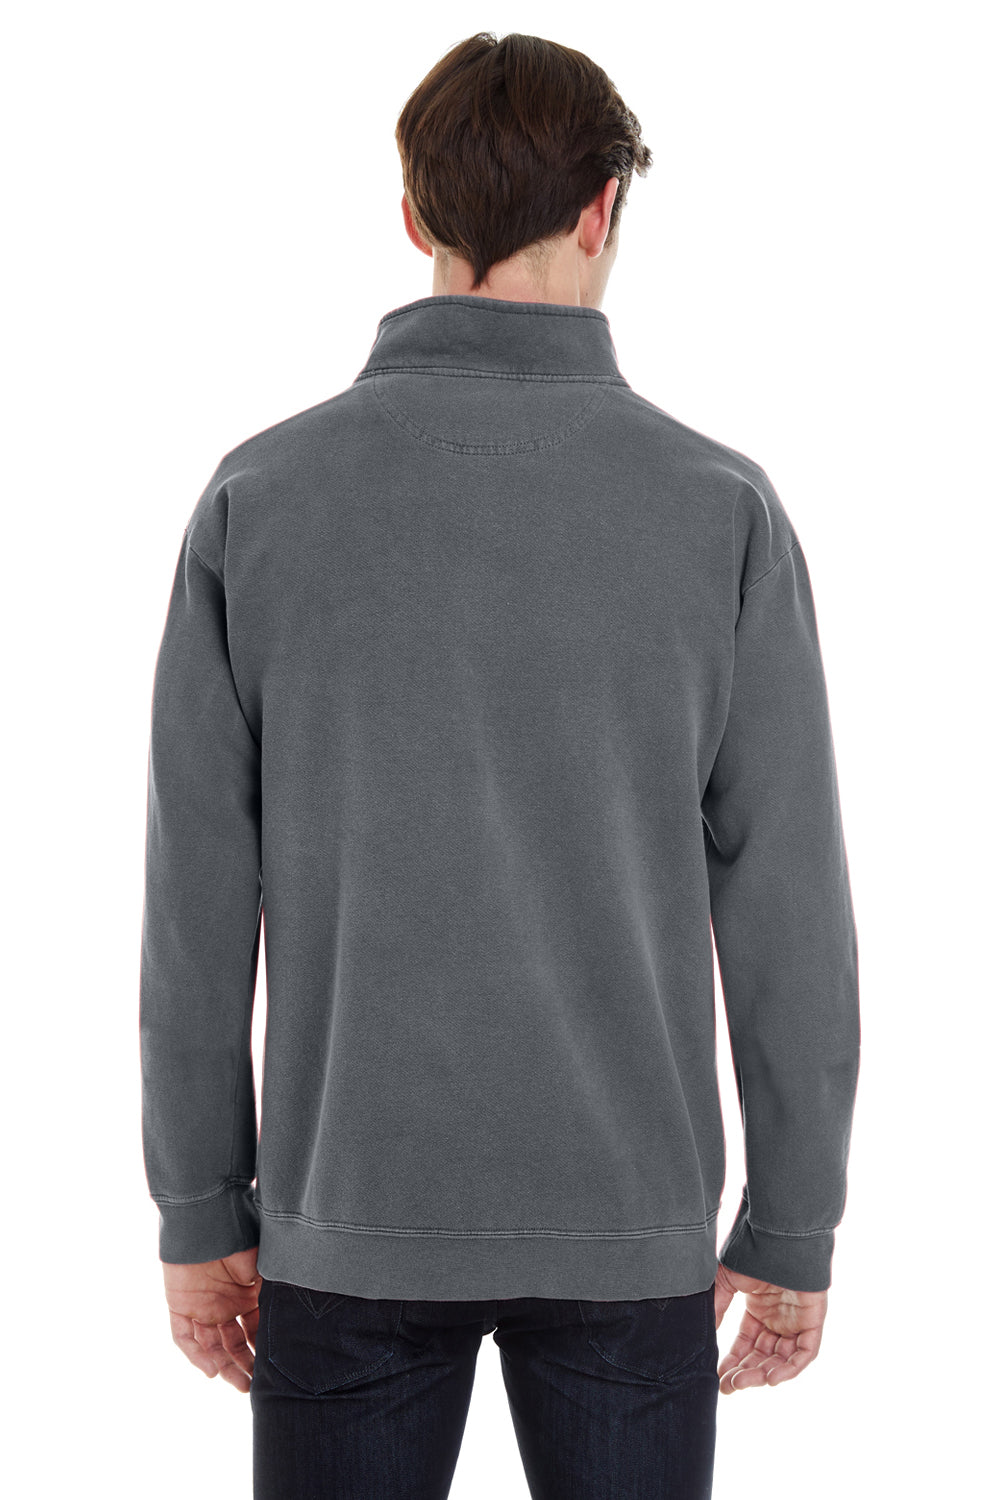 Comfort Colors 1580 Mens 1/4 Zip Sweatshirt Pepper Grey Back